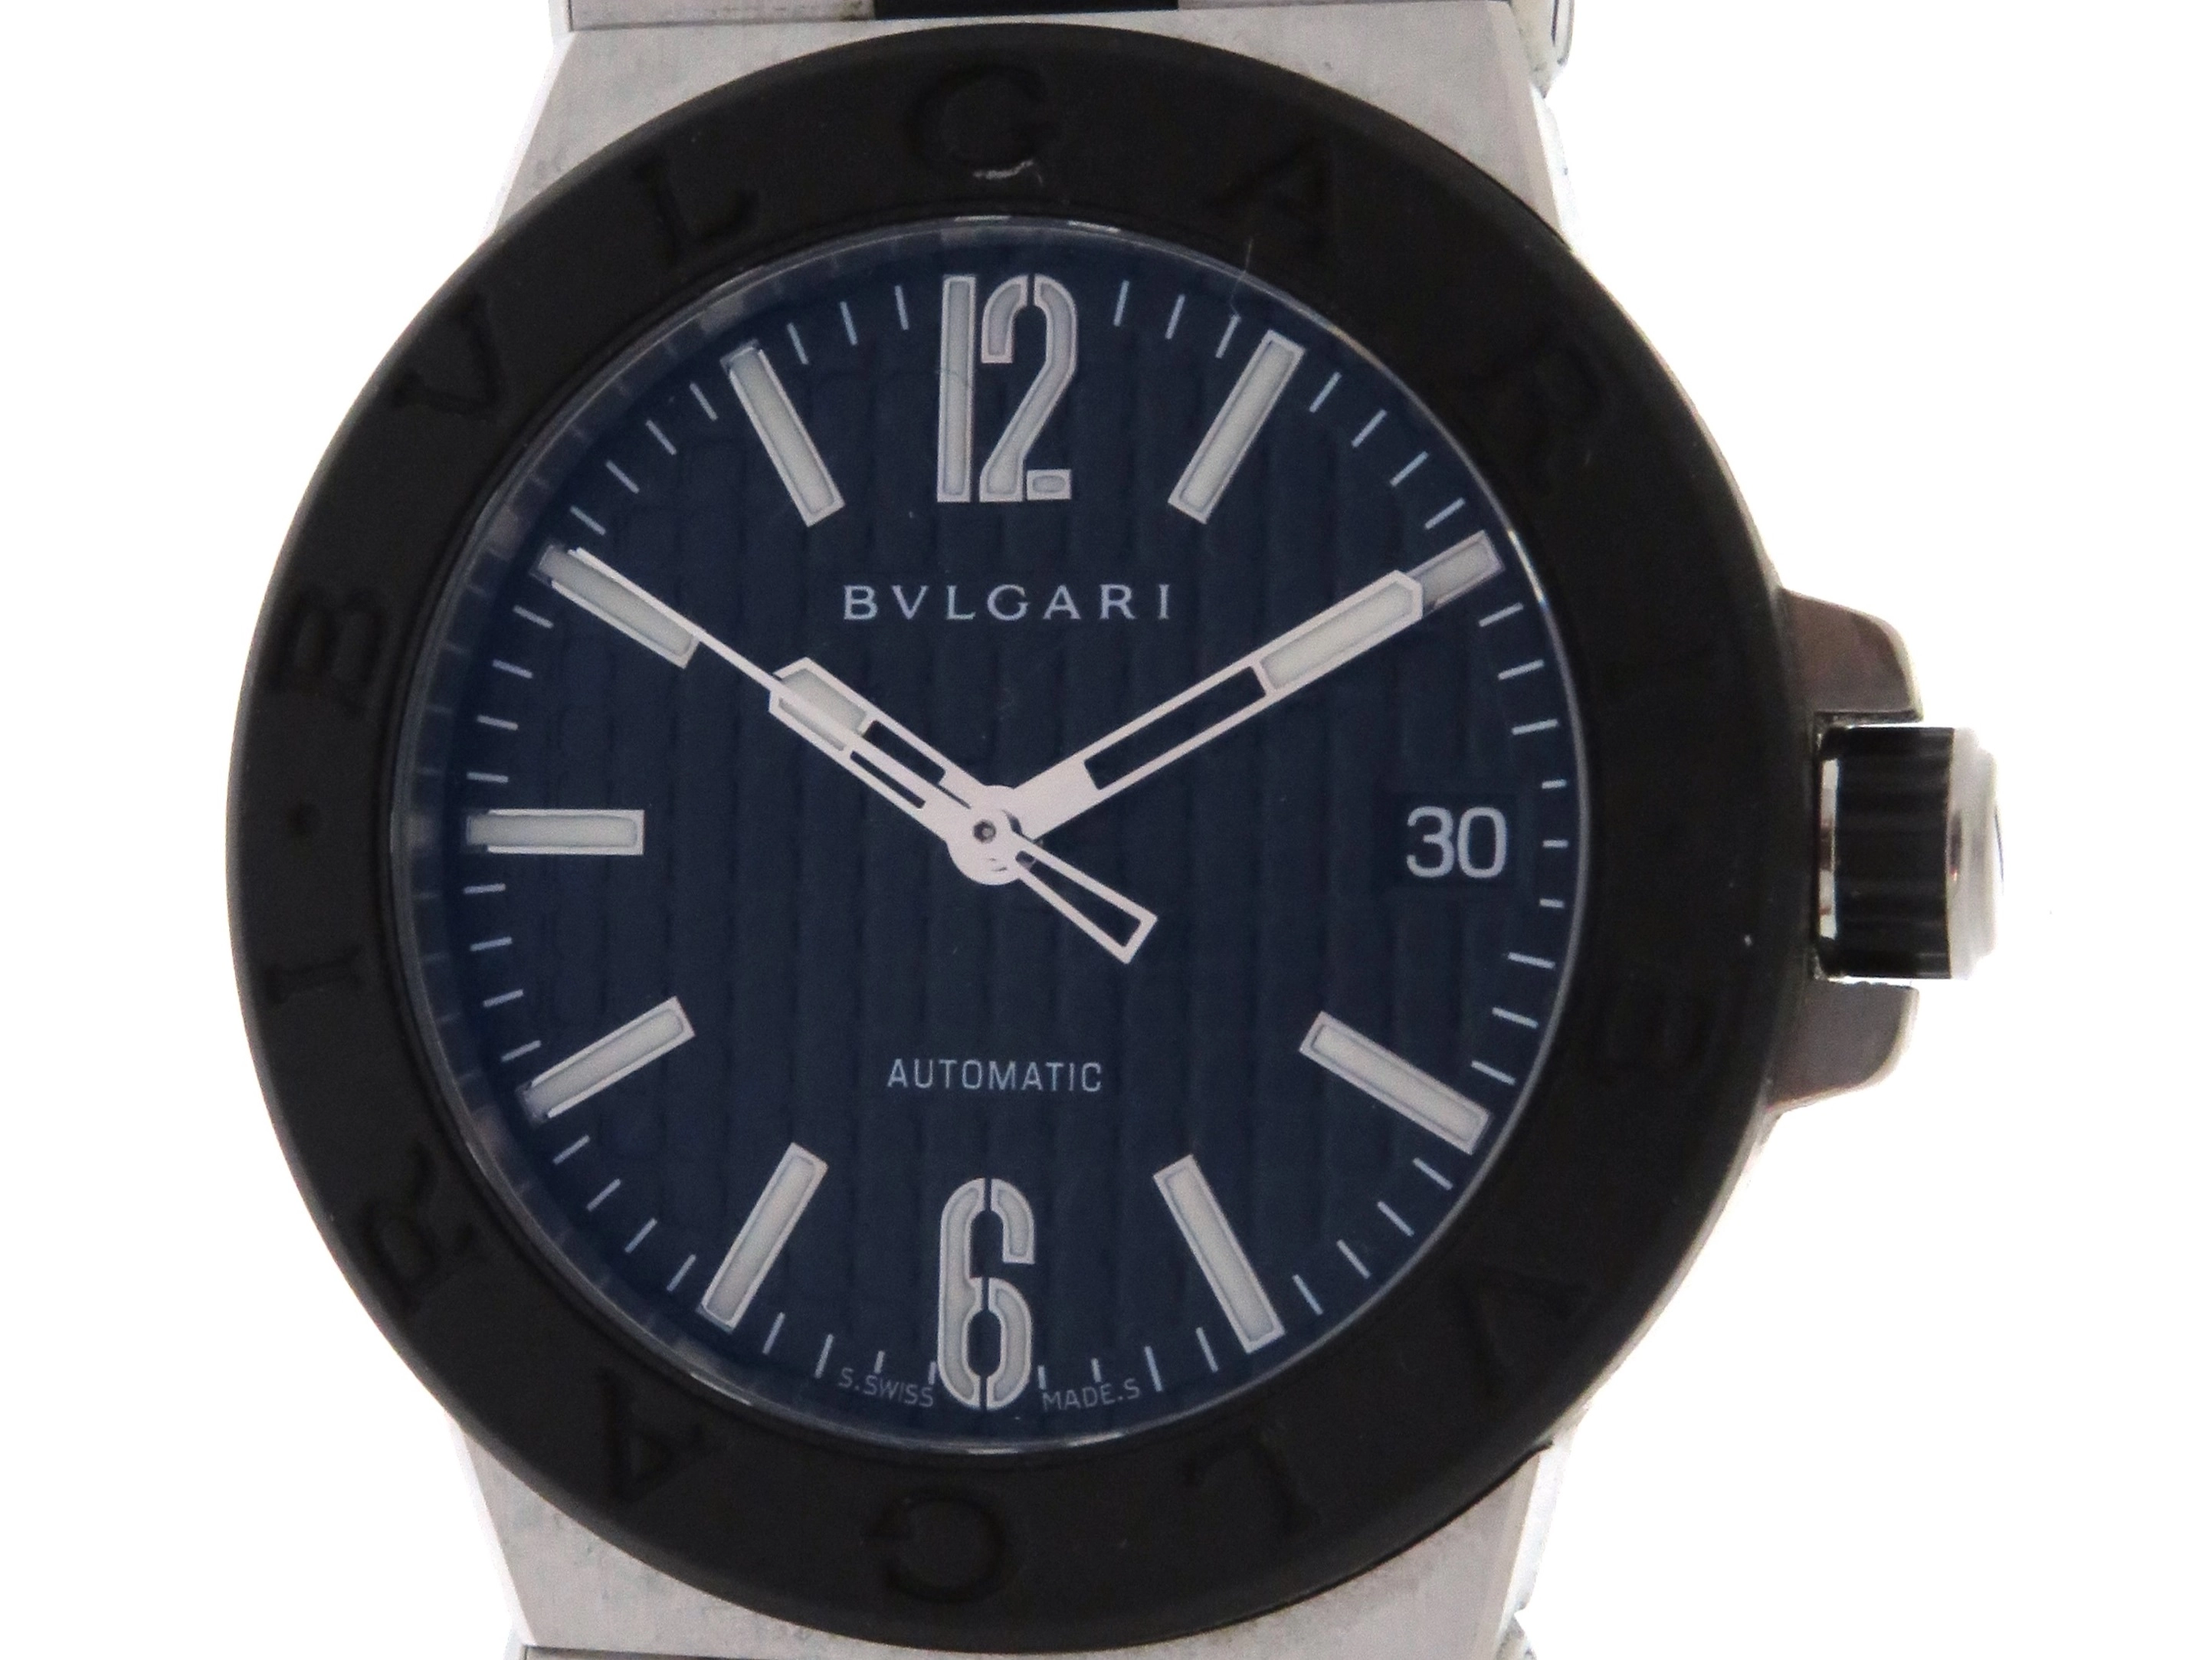 ブルガリ BVLGARI DG35SV ディアゴノ デイト 自動巻き メンズ 箱・保証書付き_764956